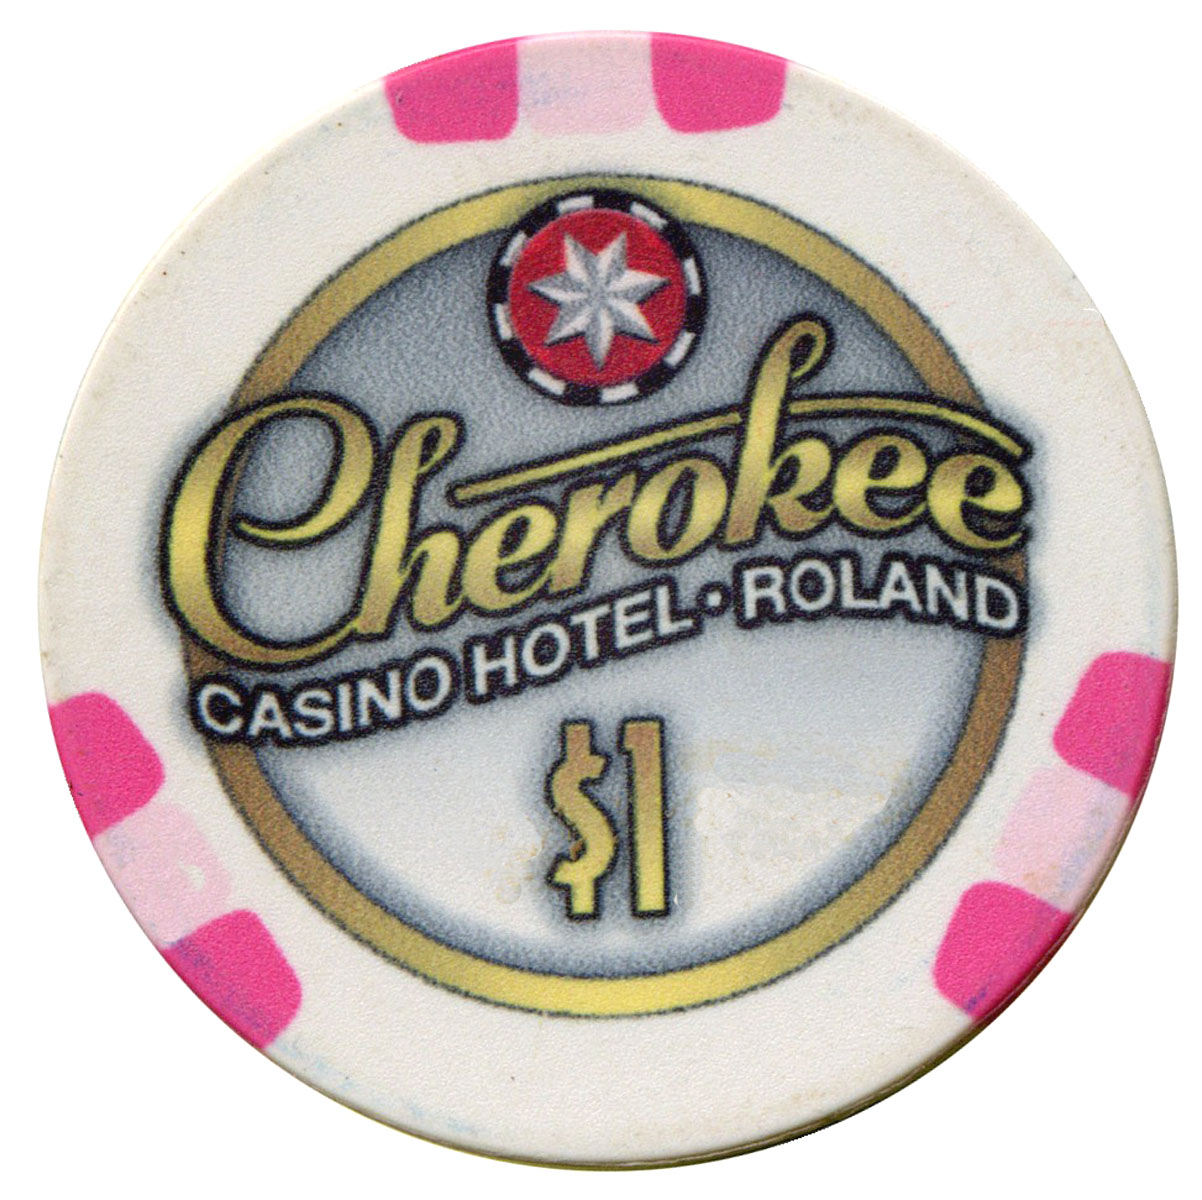 cherokee casino and hotel roland